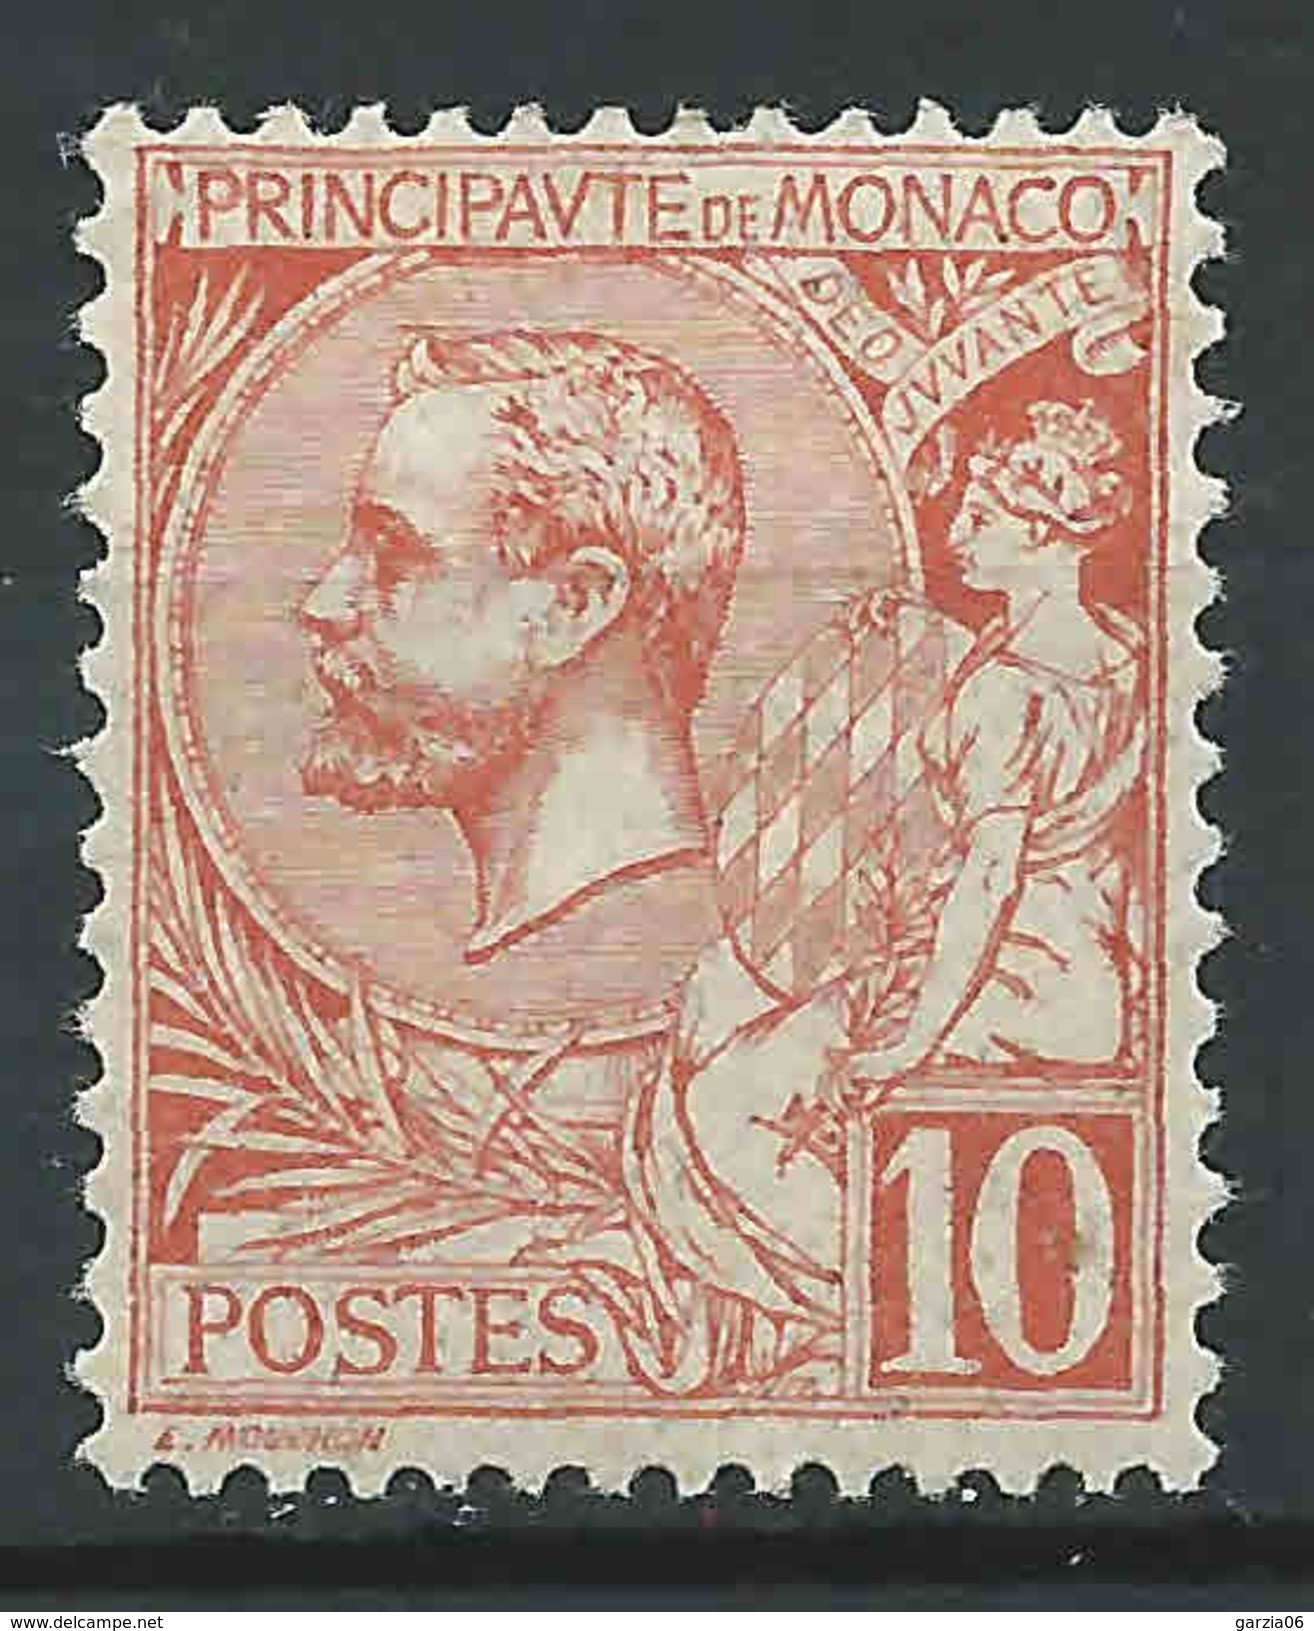 Monaco - 1901 -  Prince Albert 1ier - N° 23  -neuf * - MLH - Ungebraucht